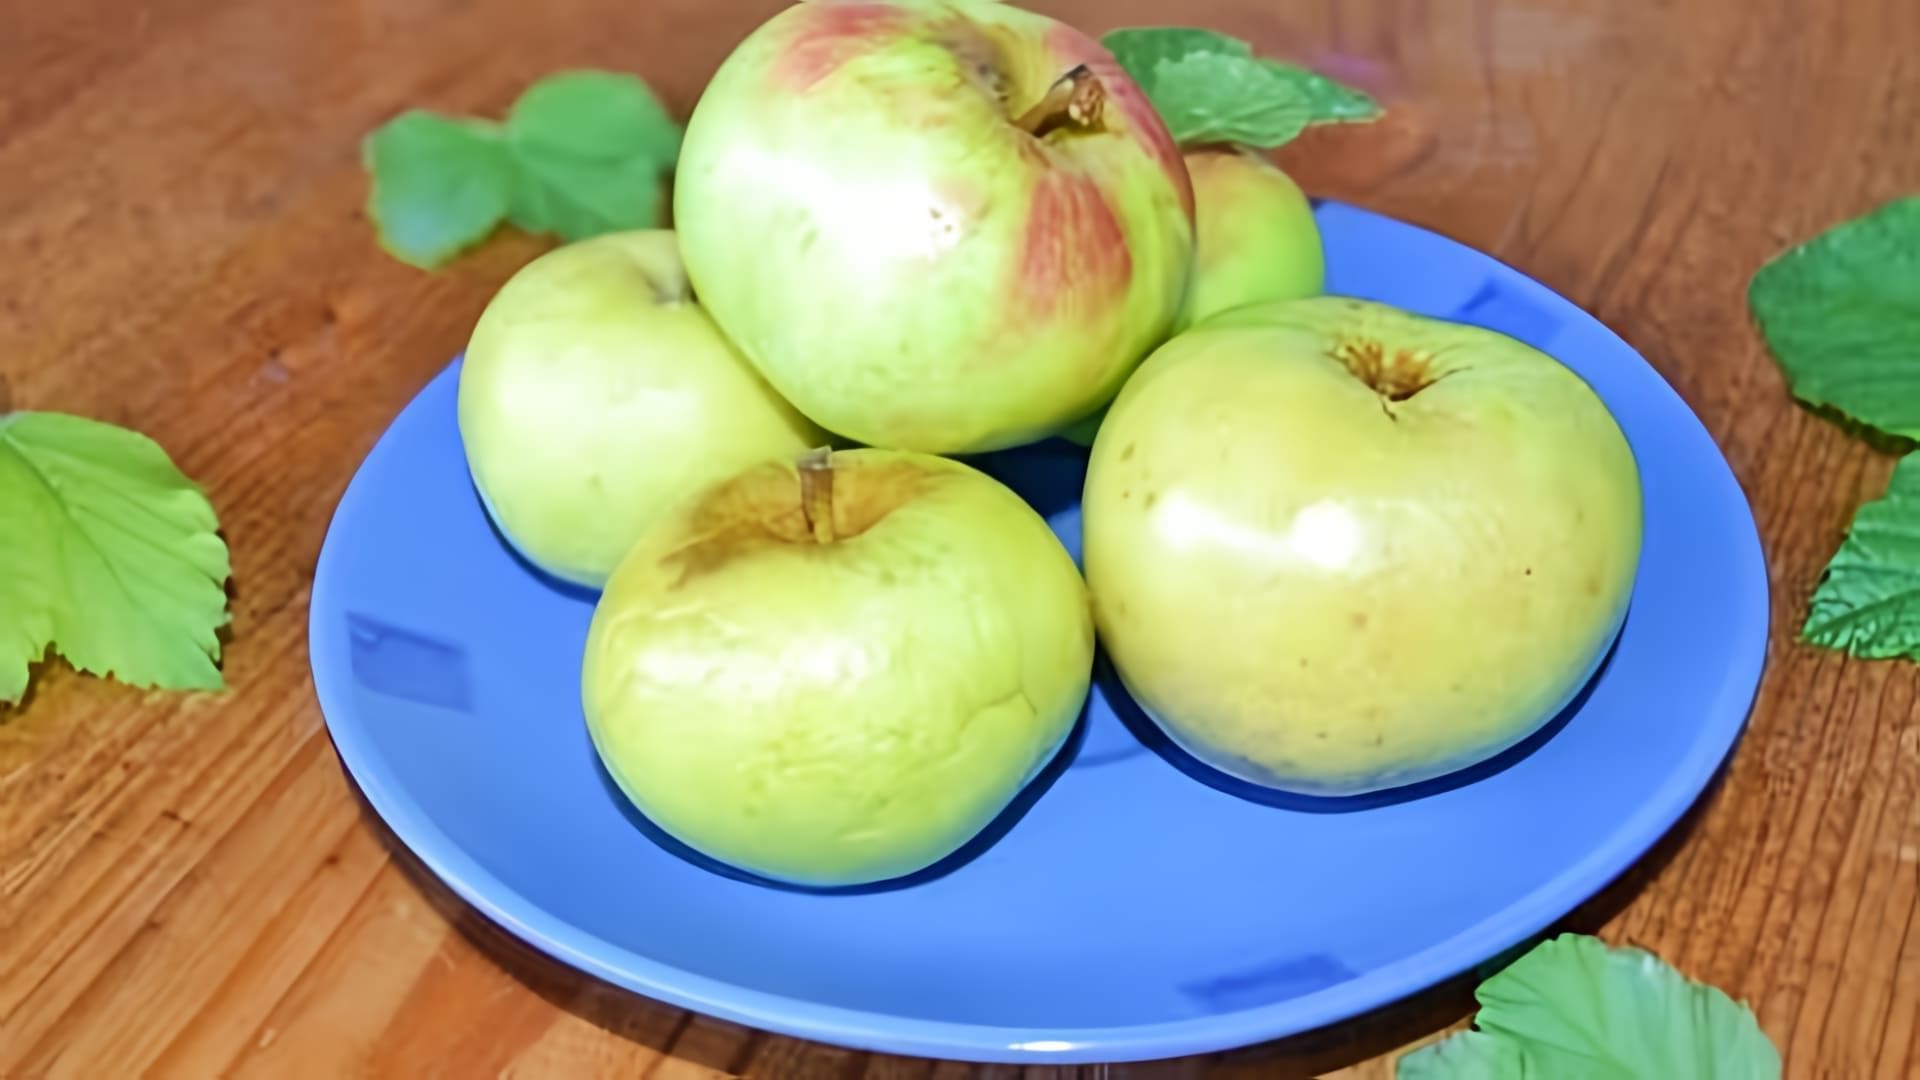 В этом видео демонстрируется рецепт приготовления моченых яблок с ржаной мукой